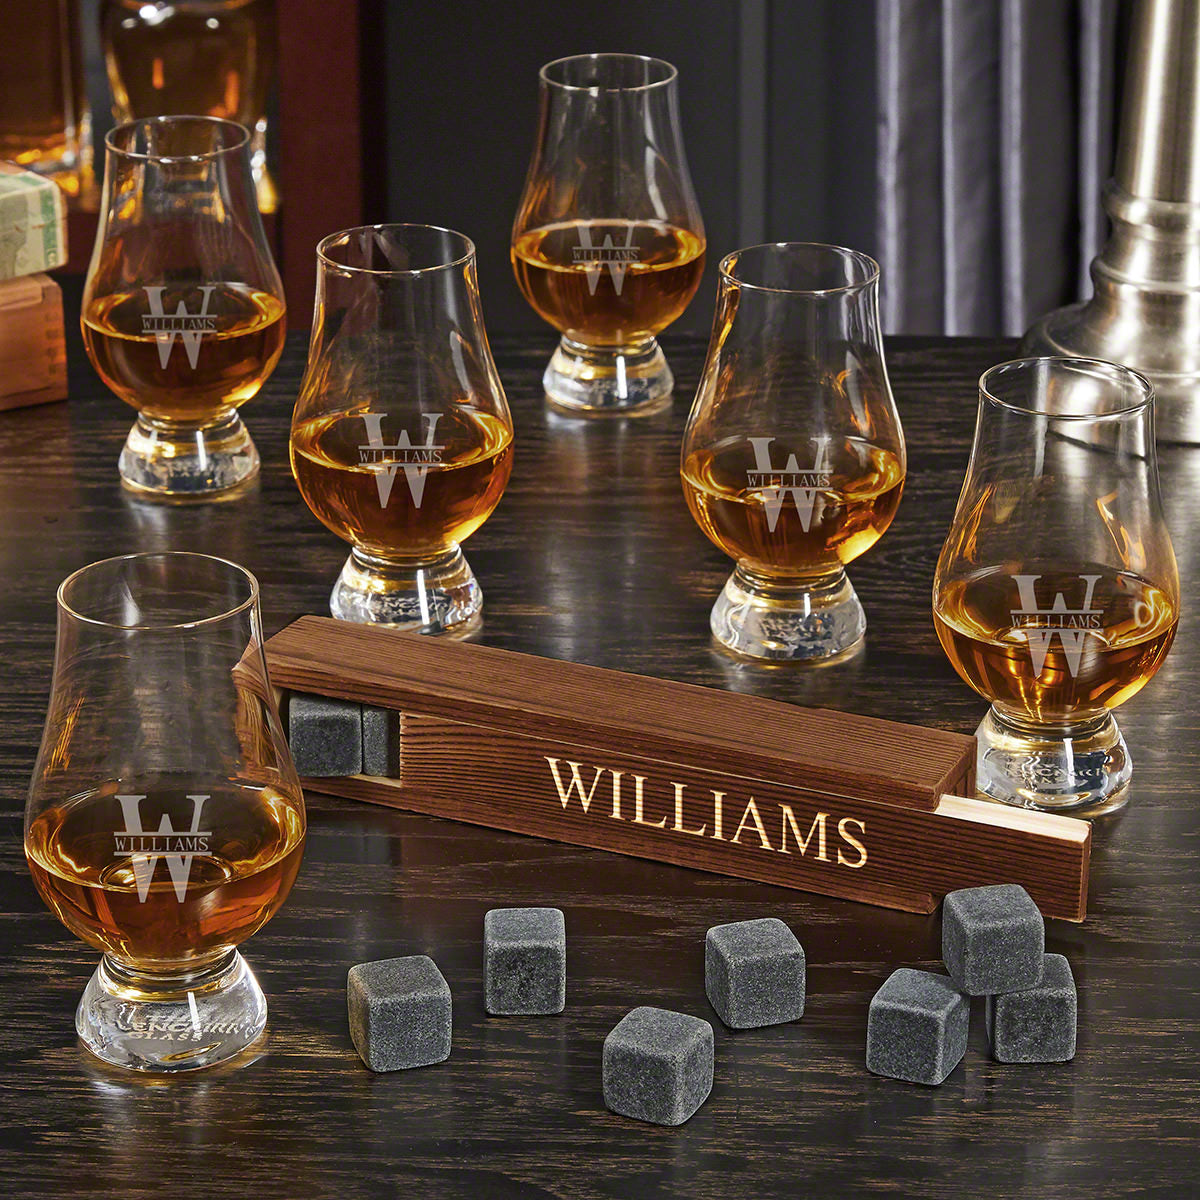 Engraved Whiskey Stone Set with 6 Glencairn Whiskey Tasting Glasses